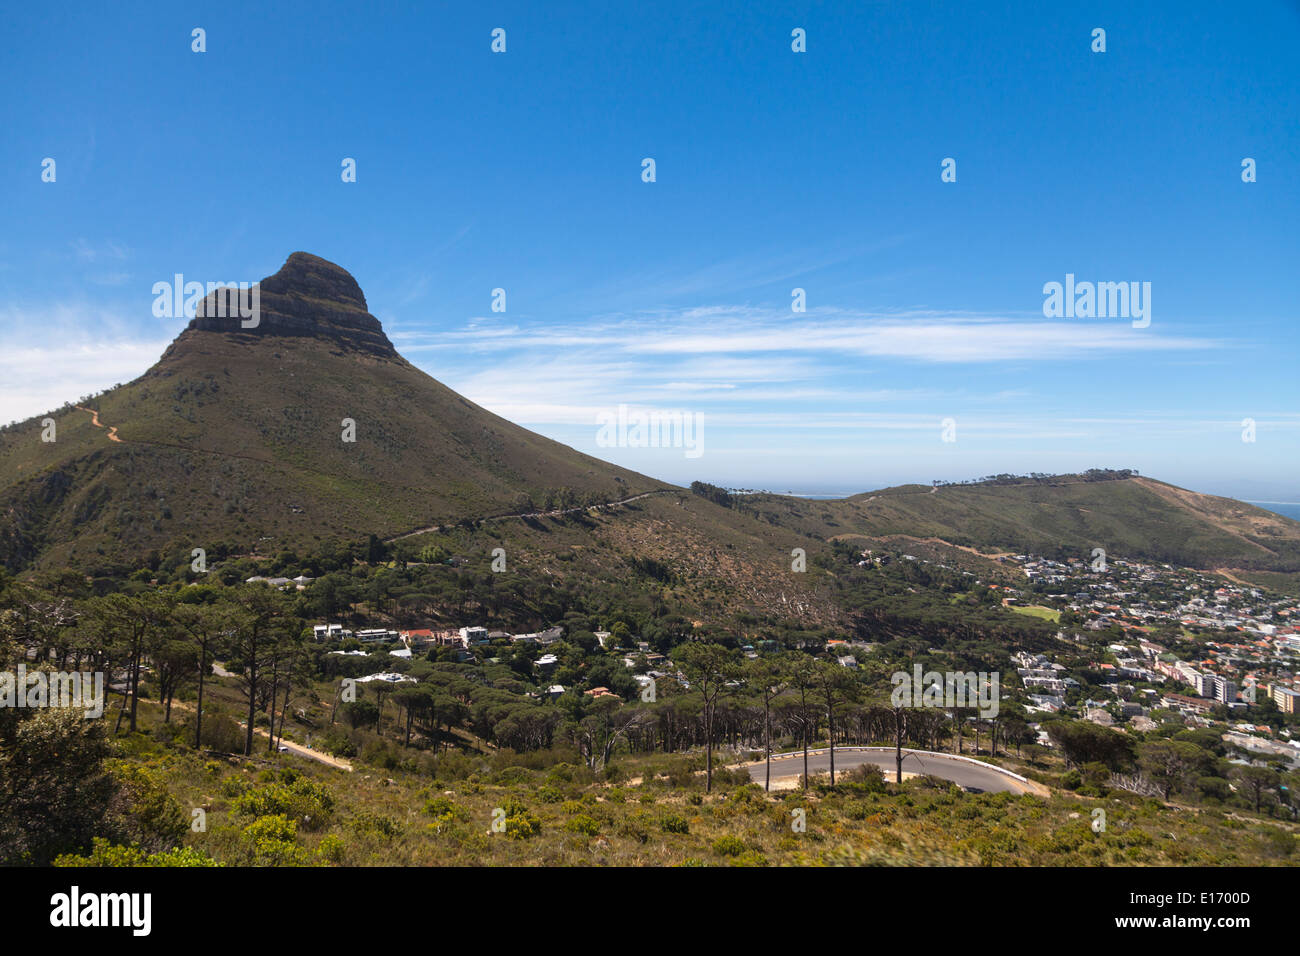 Vista di testa di leone e Signal Hill dalla Città del Capo stazione della funivia Foto Stock